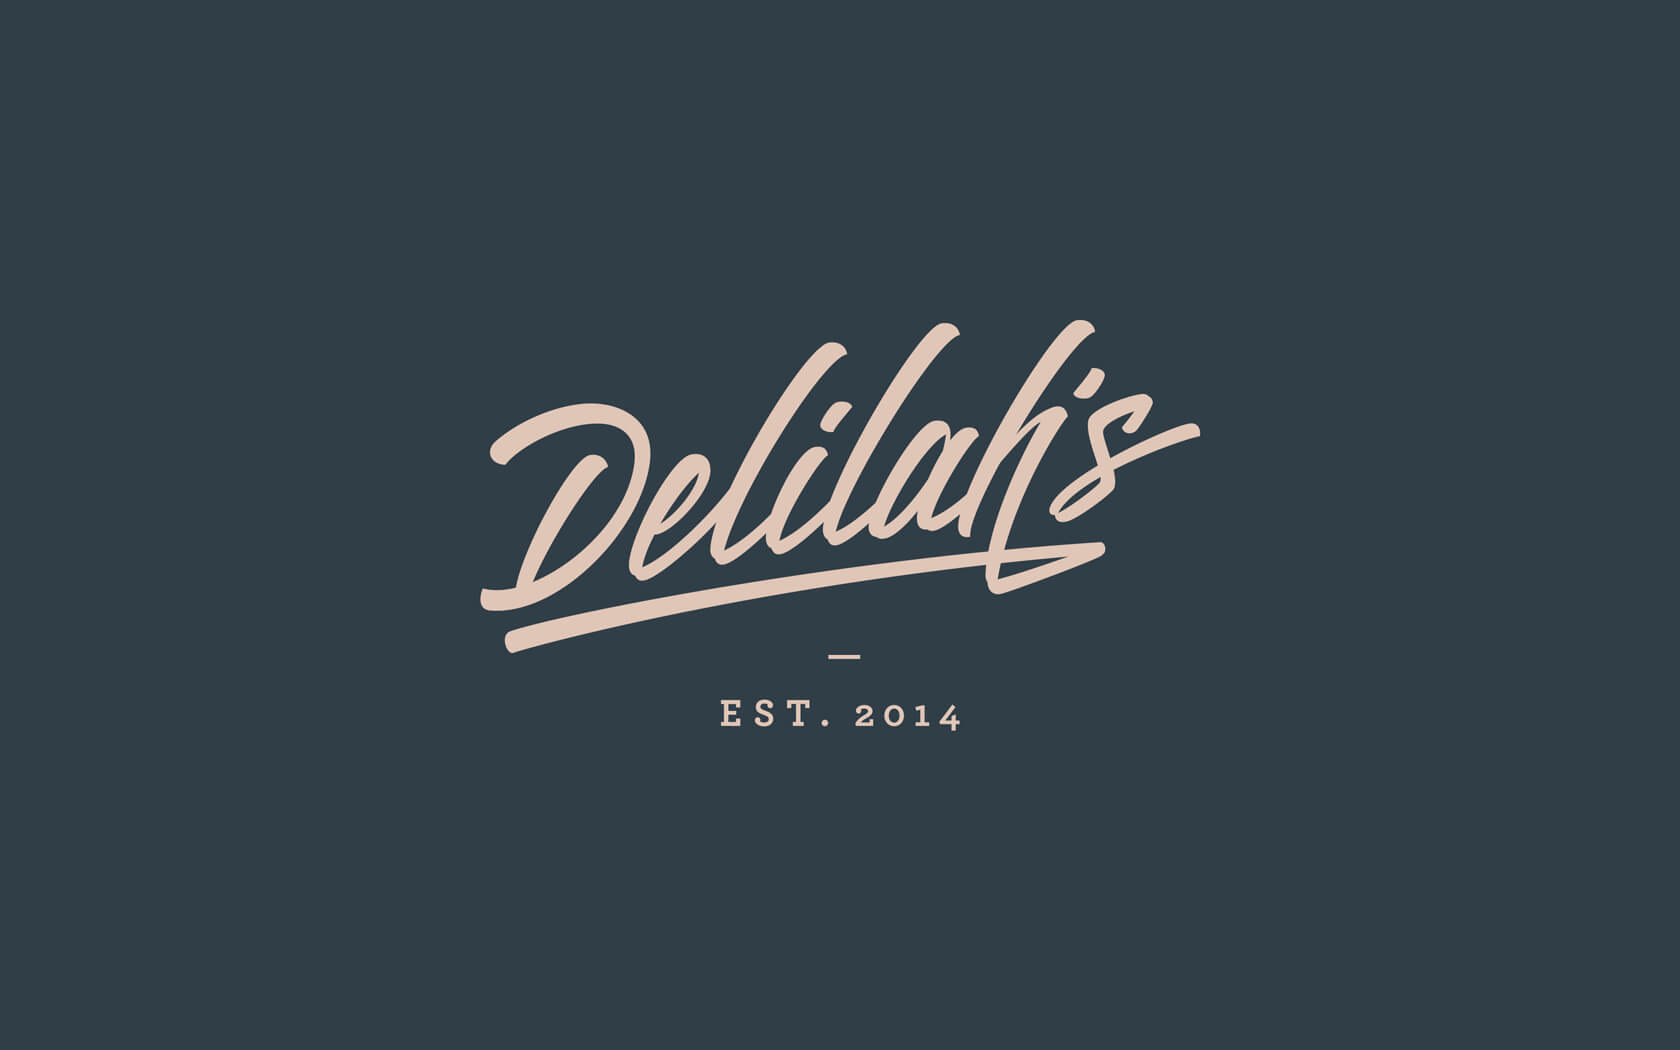 Delilah's. Brand logo in beige